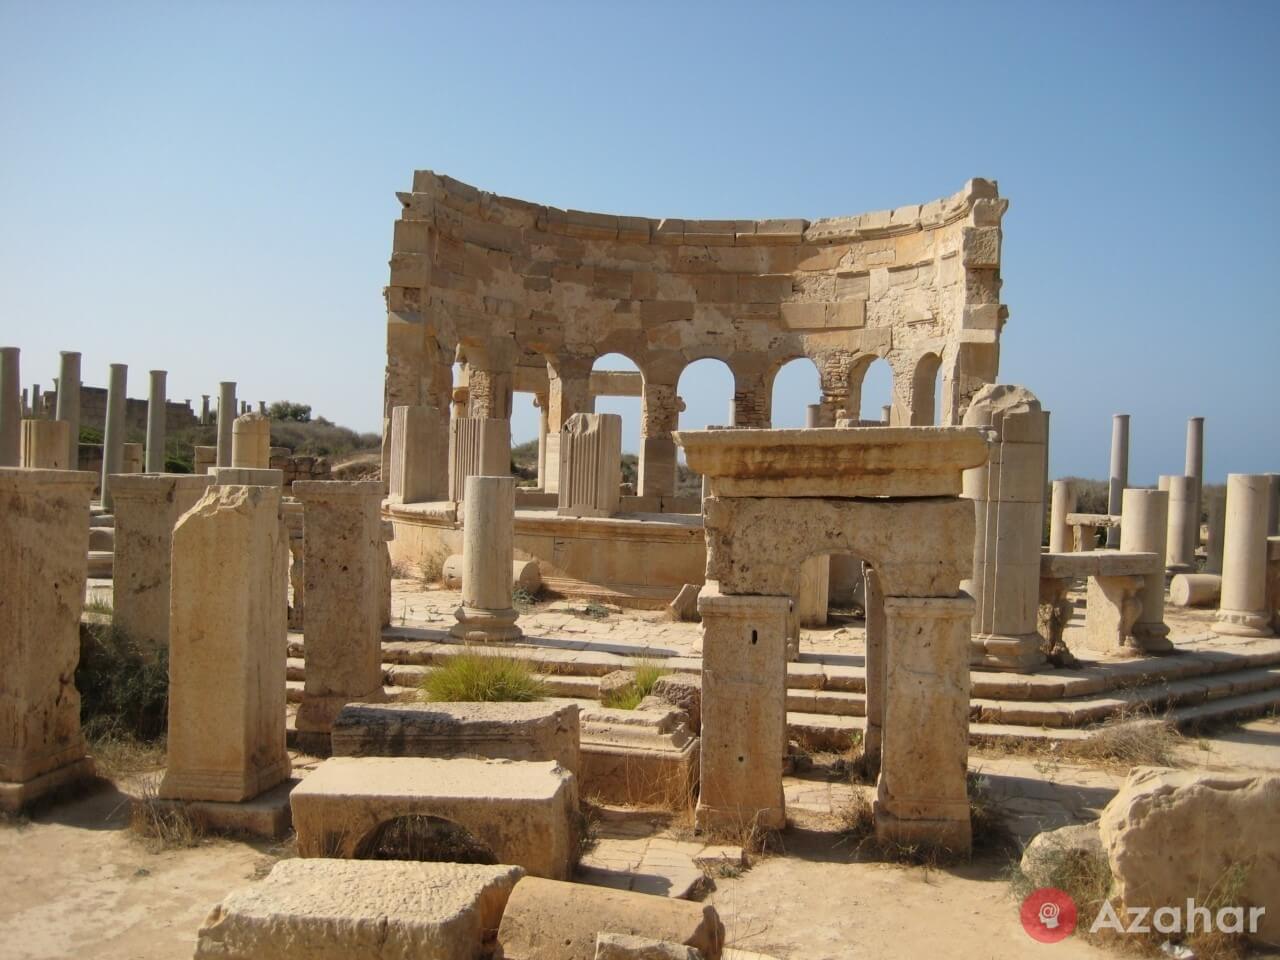 Leptis Magna, Al Khums, Libya